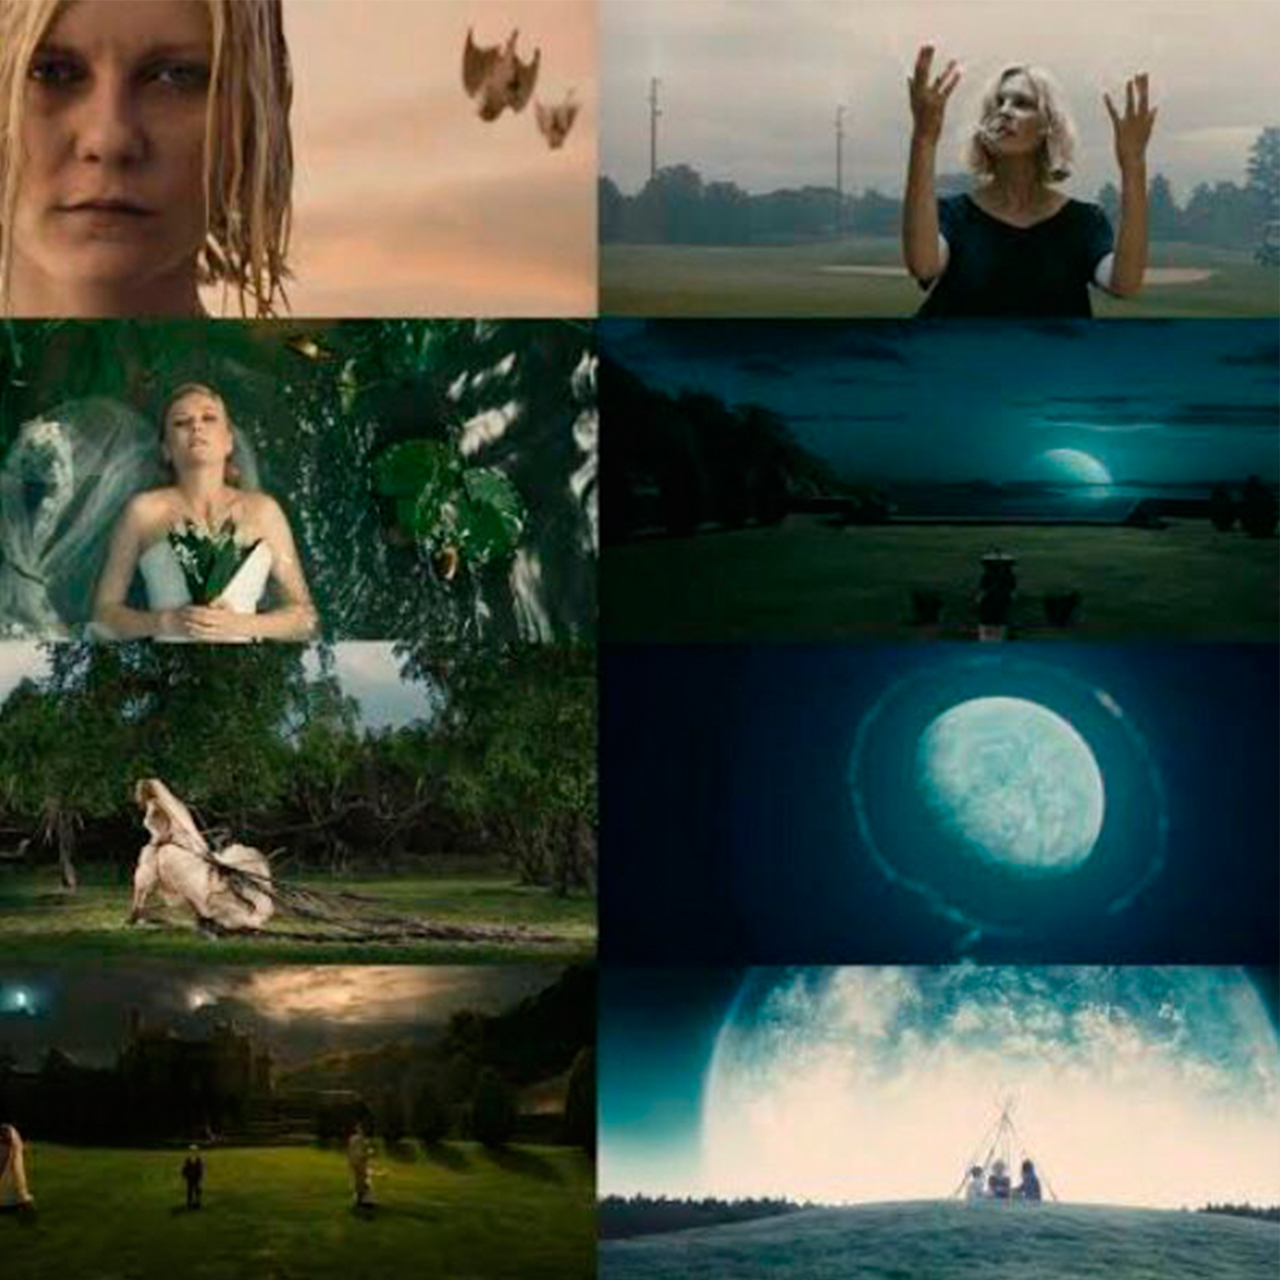 Imagem: Cenas do filme Melancholia, de Lars von Trier, 2011.